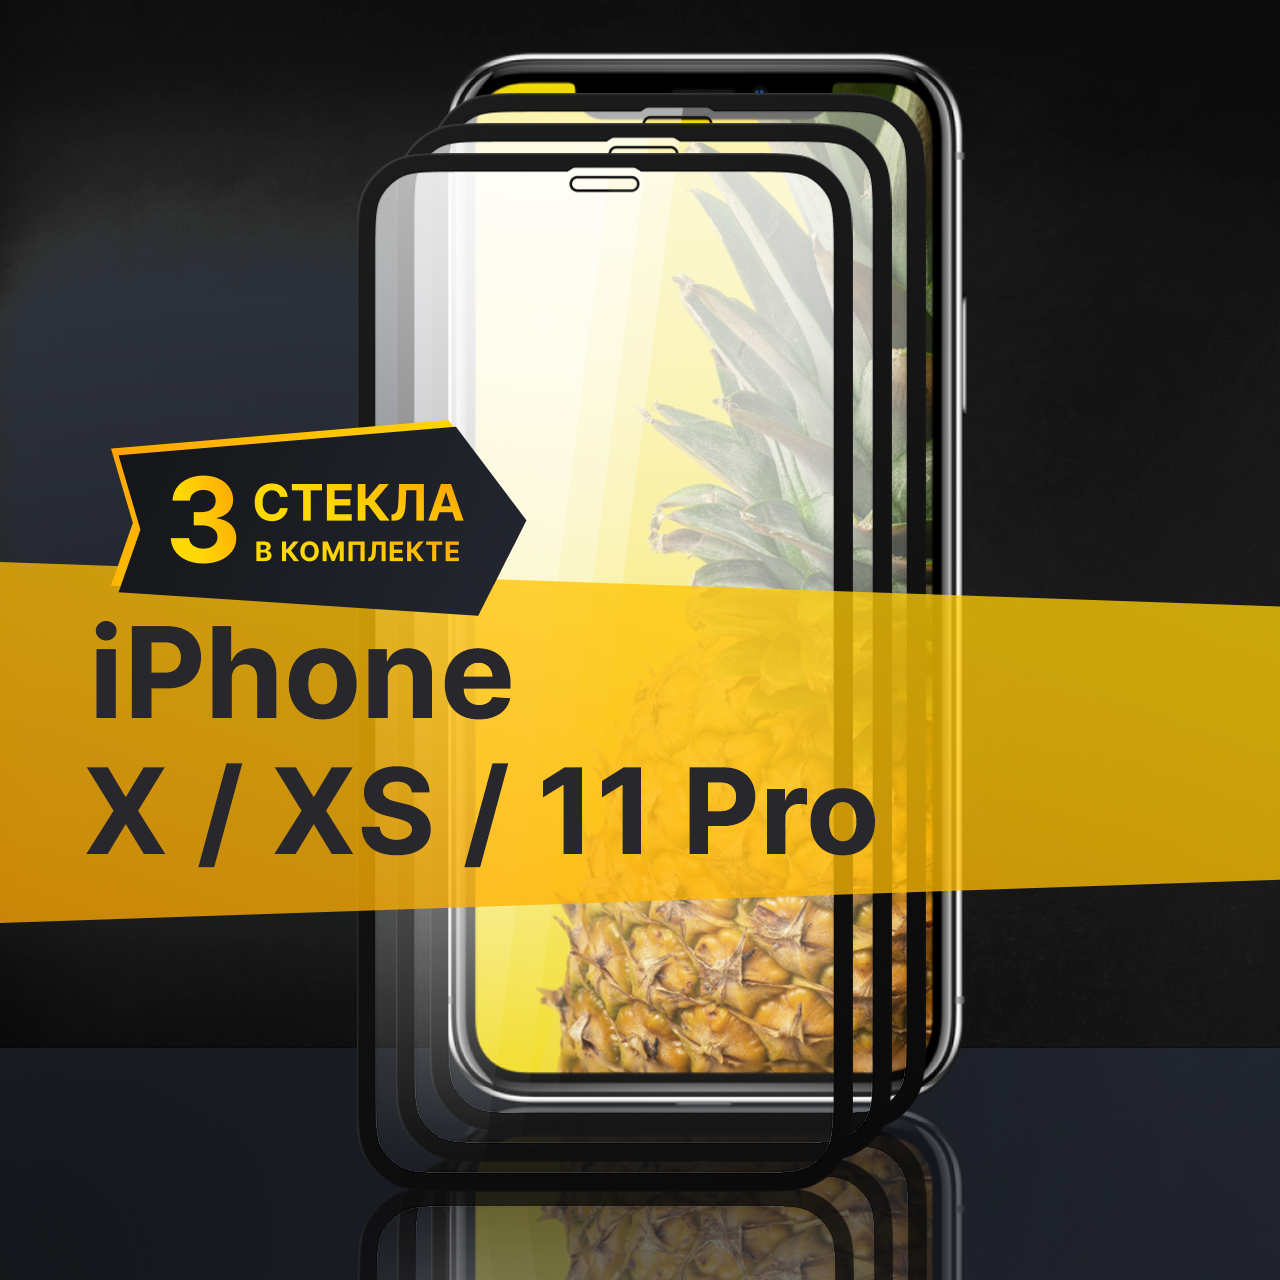 Противоударное защитное стекло для телефона Apple iPhone X XS и 11 Pro / Стекло с олеофобным покрытием на Эпл Айфон Х ХС и 11 Про